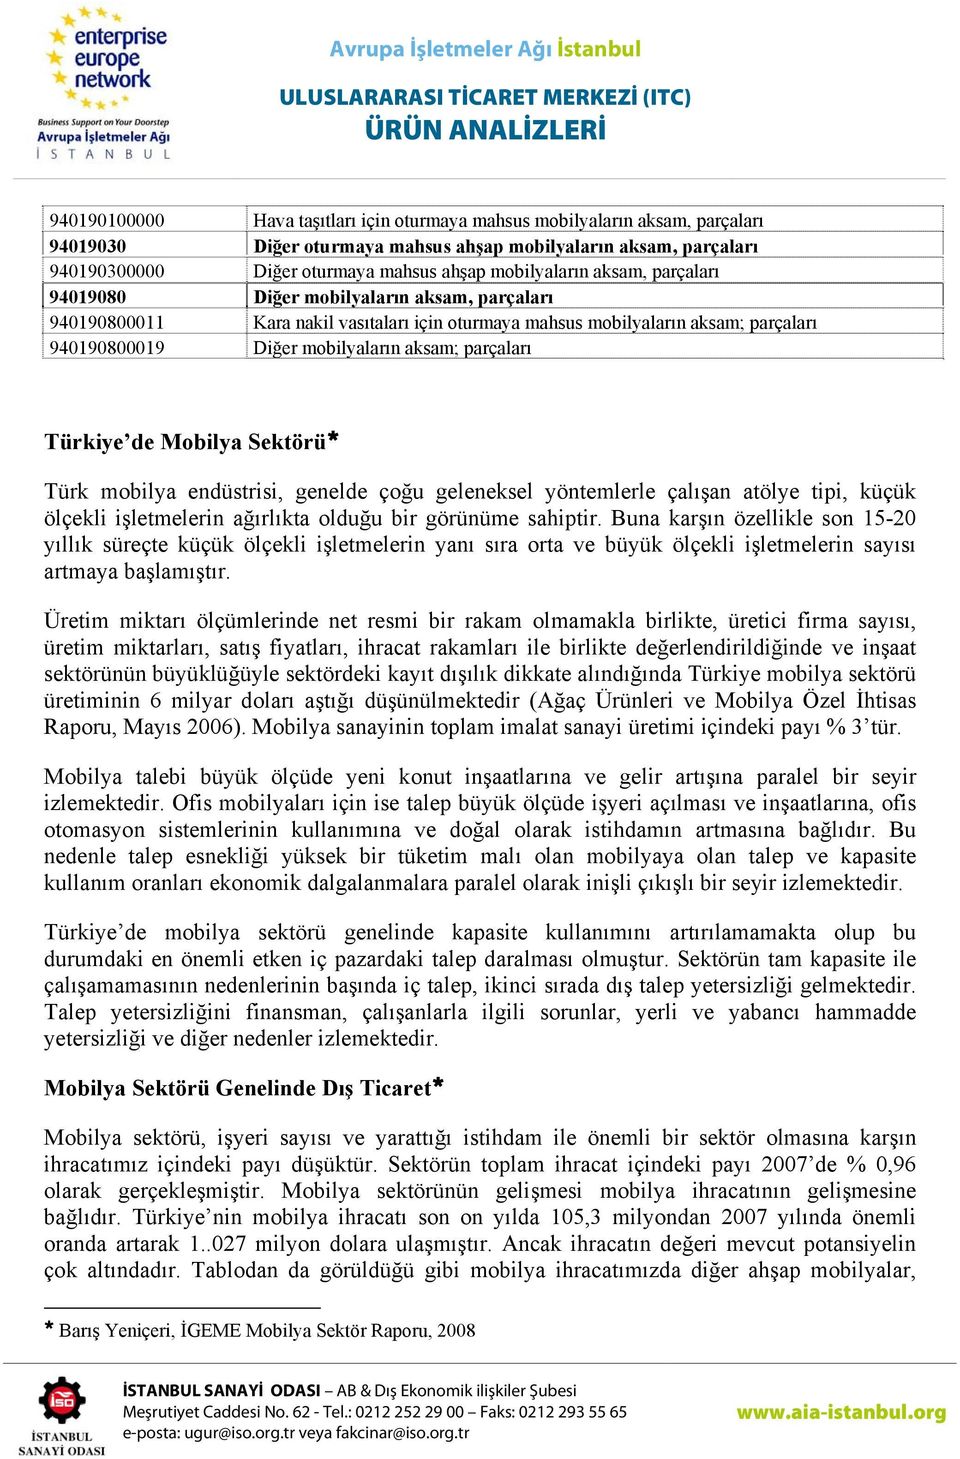 Türkiye de Mobilya Sektörü Türk mobilya endüstrisi, genelde çoğu geleneksel yöntemlerle çalışan atölye tipi, küçük ölçekli işletmelerin ağırlıkta olduğu bir görünüme sahiptir.